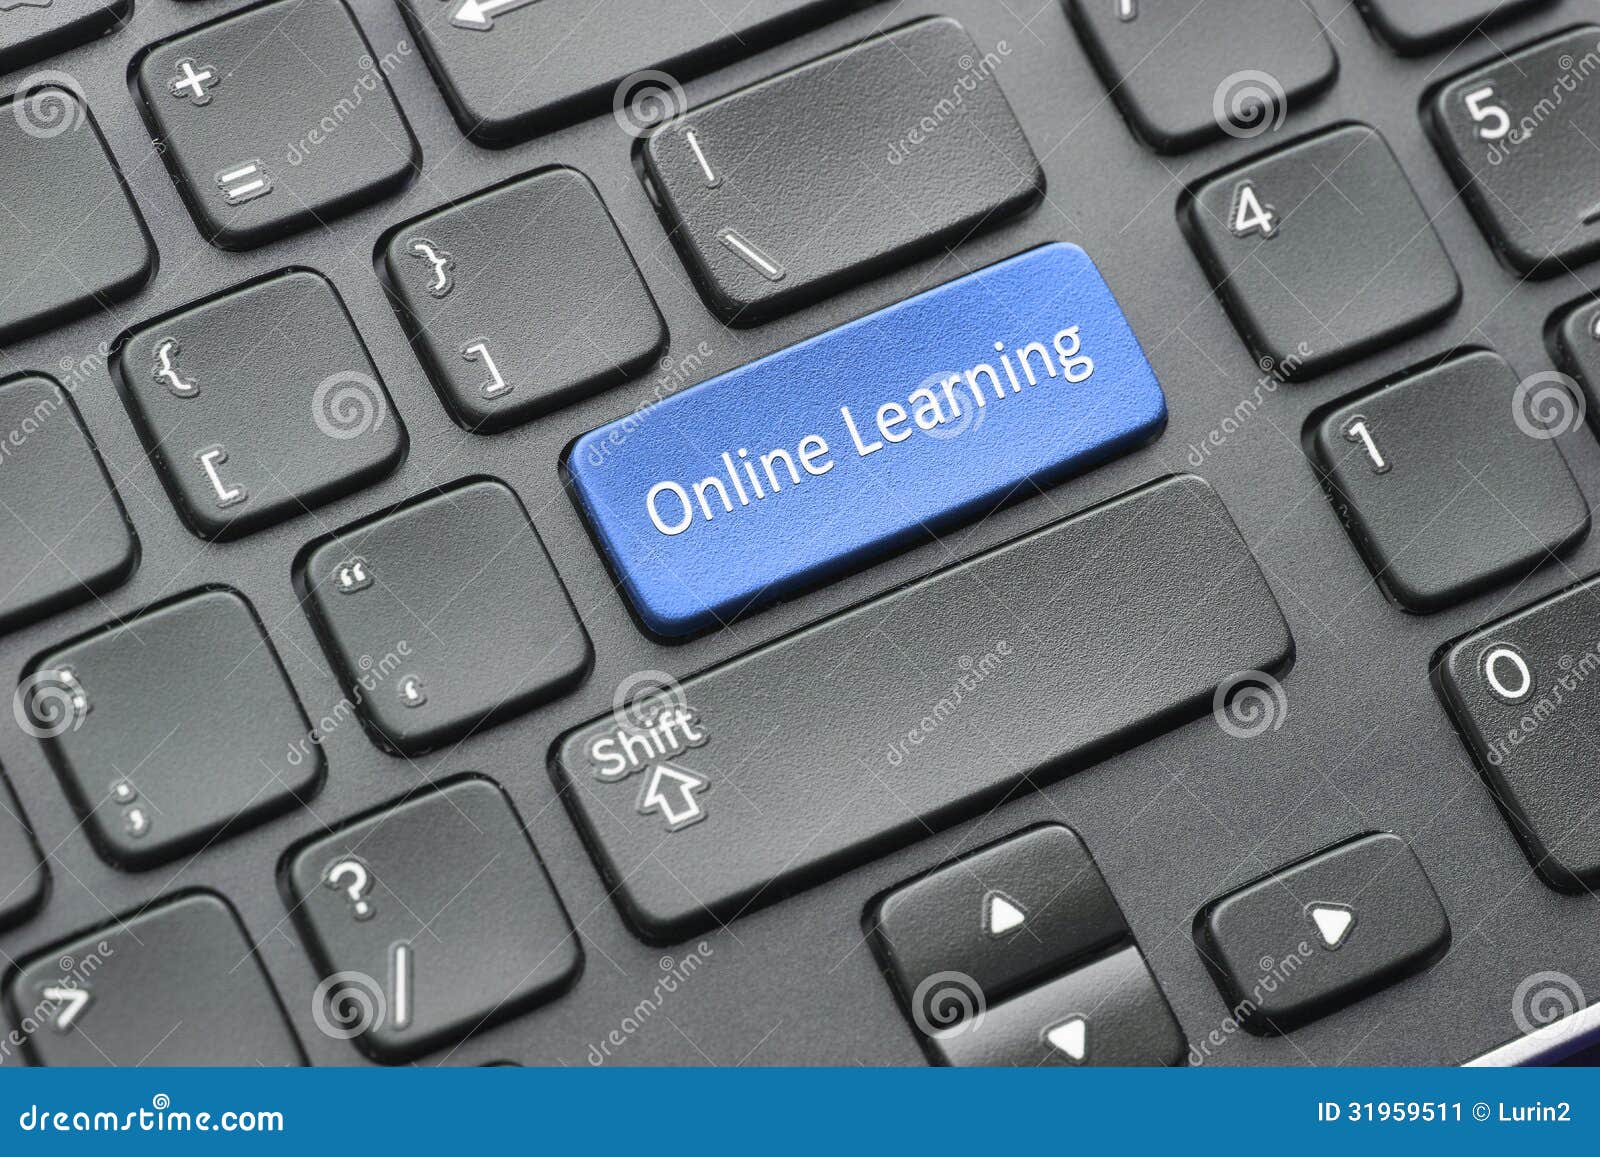 online learning key on keyboard